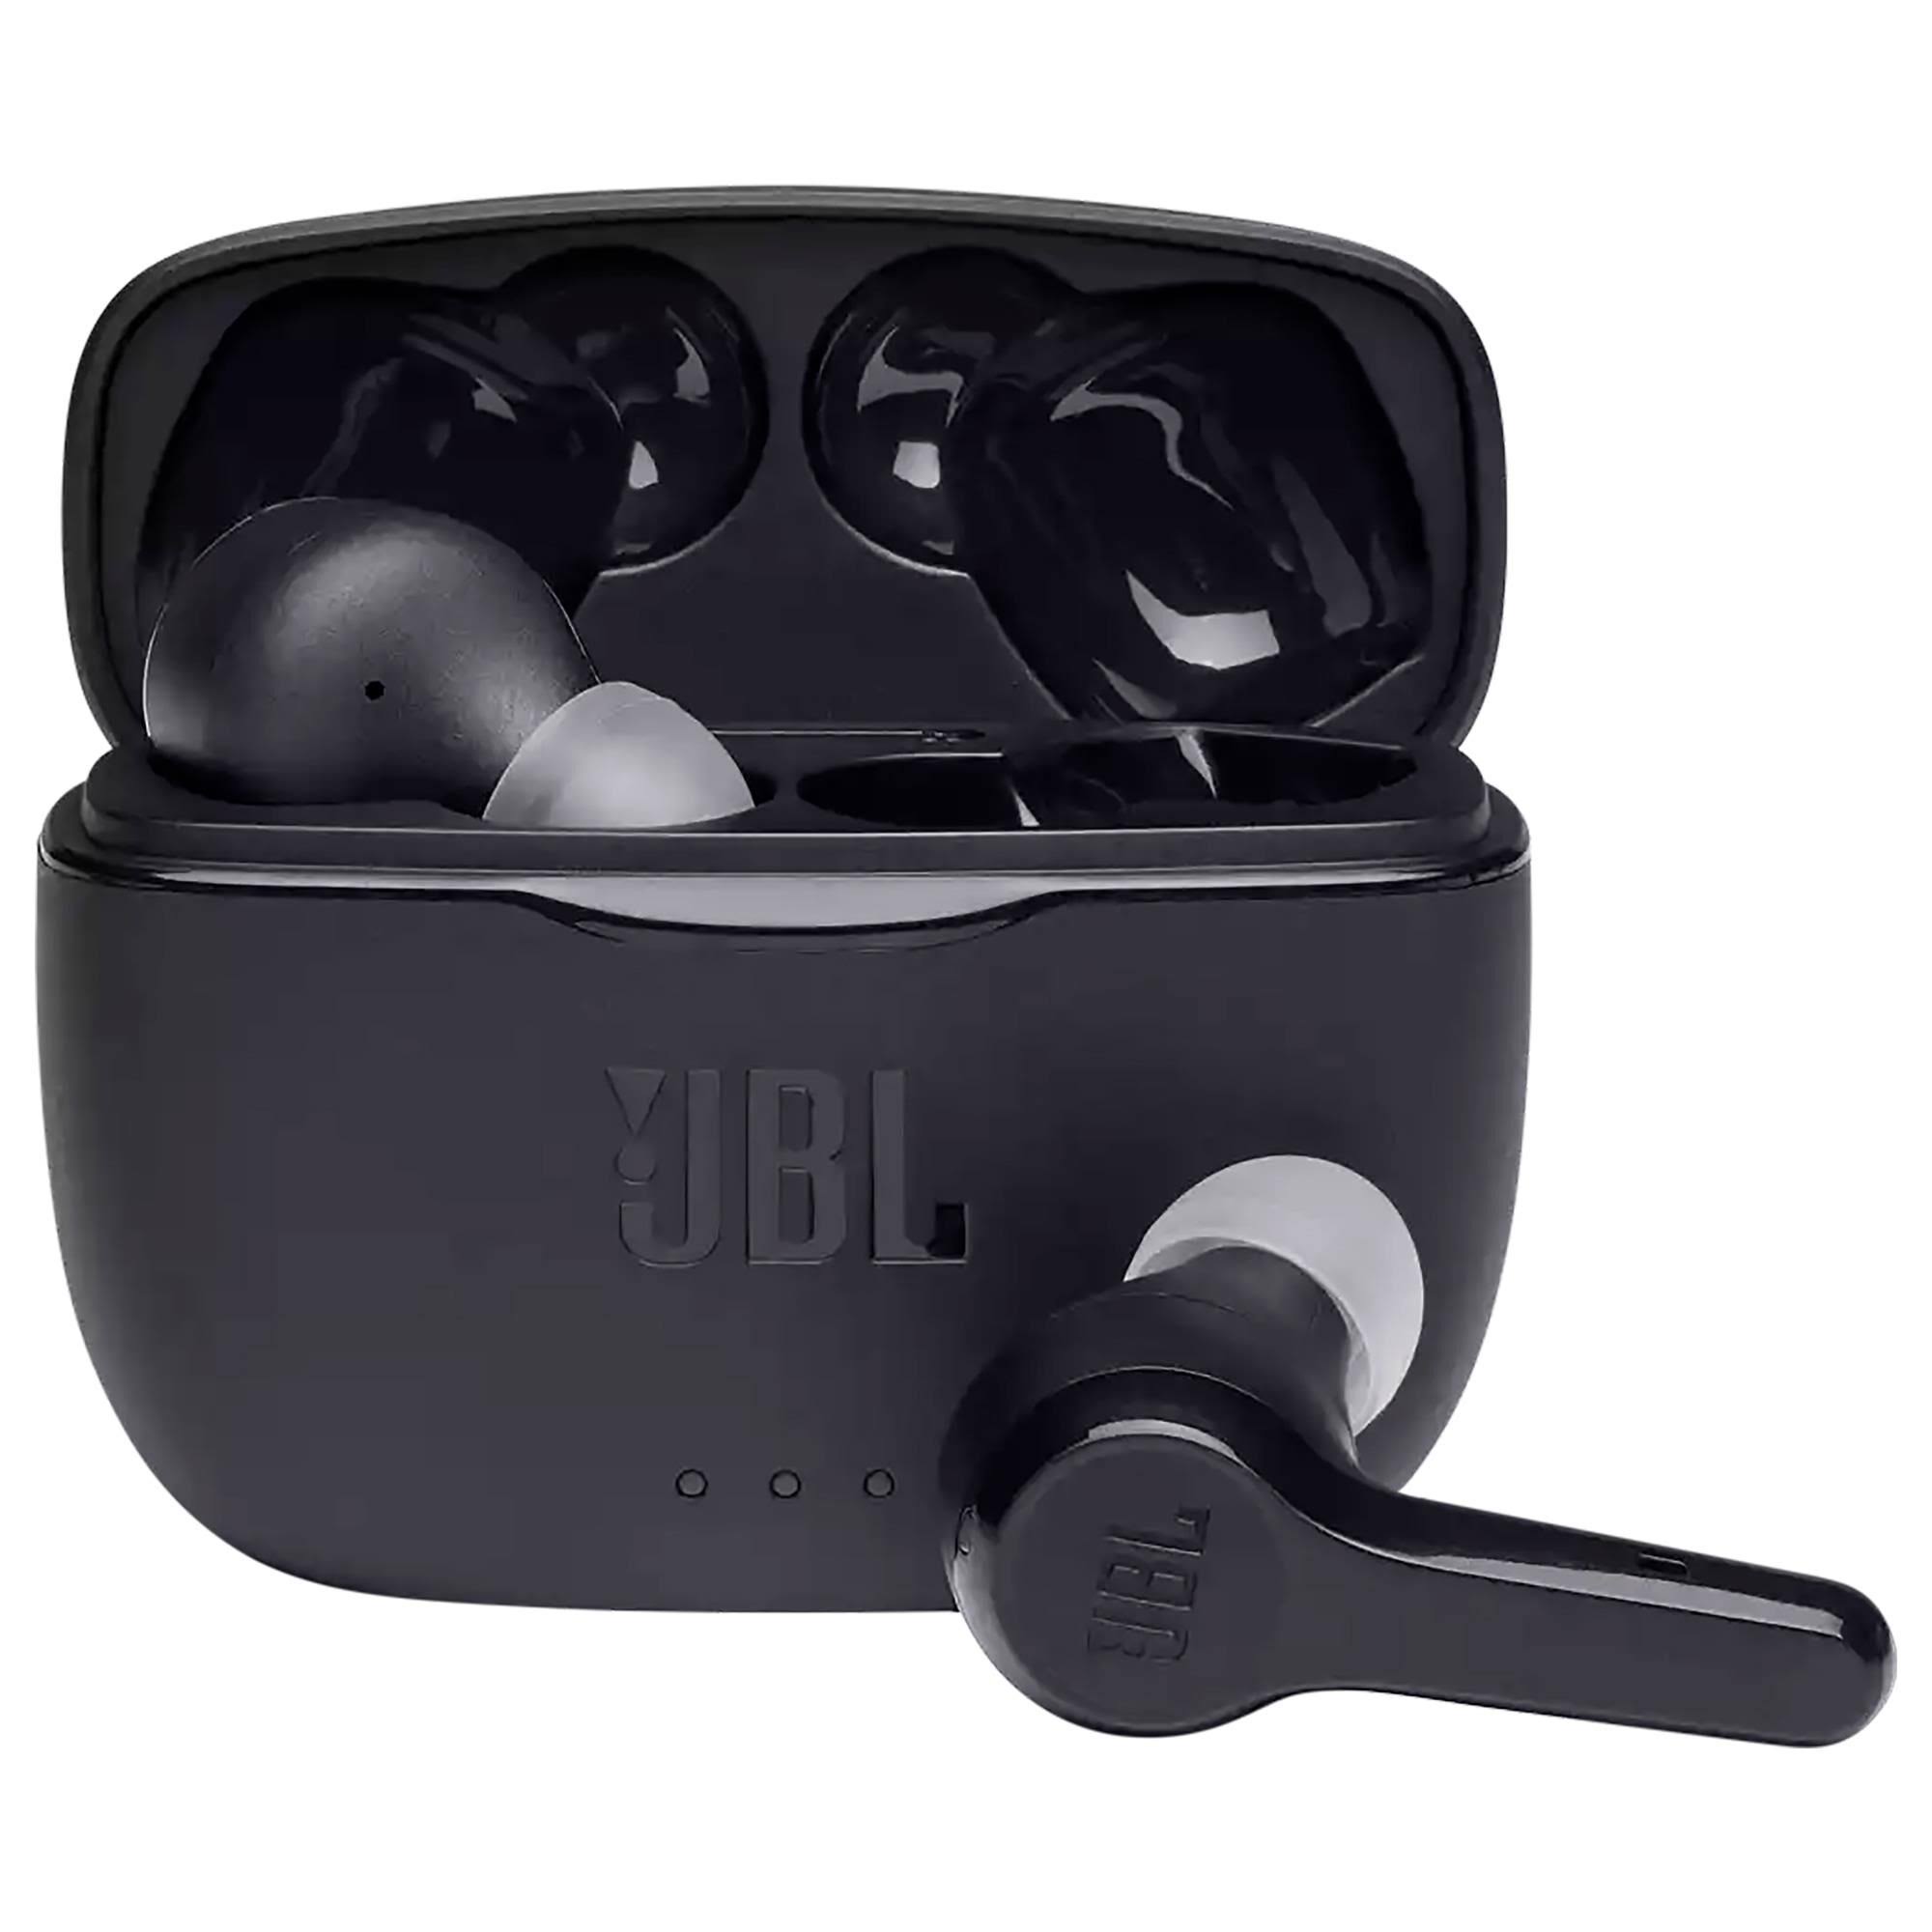 JBL Tune 215TWS - True Wireless in-Ear Headphones - Black